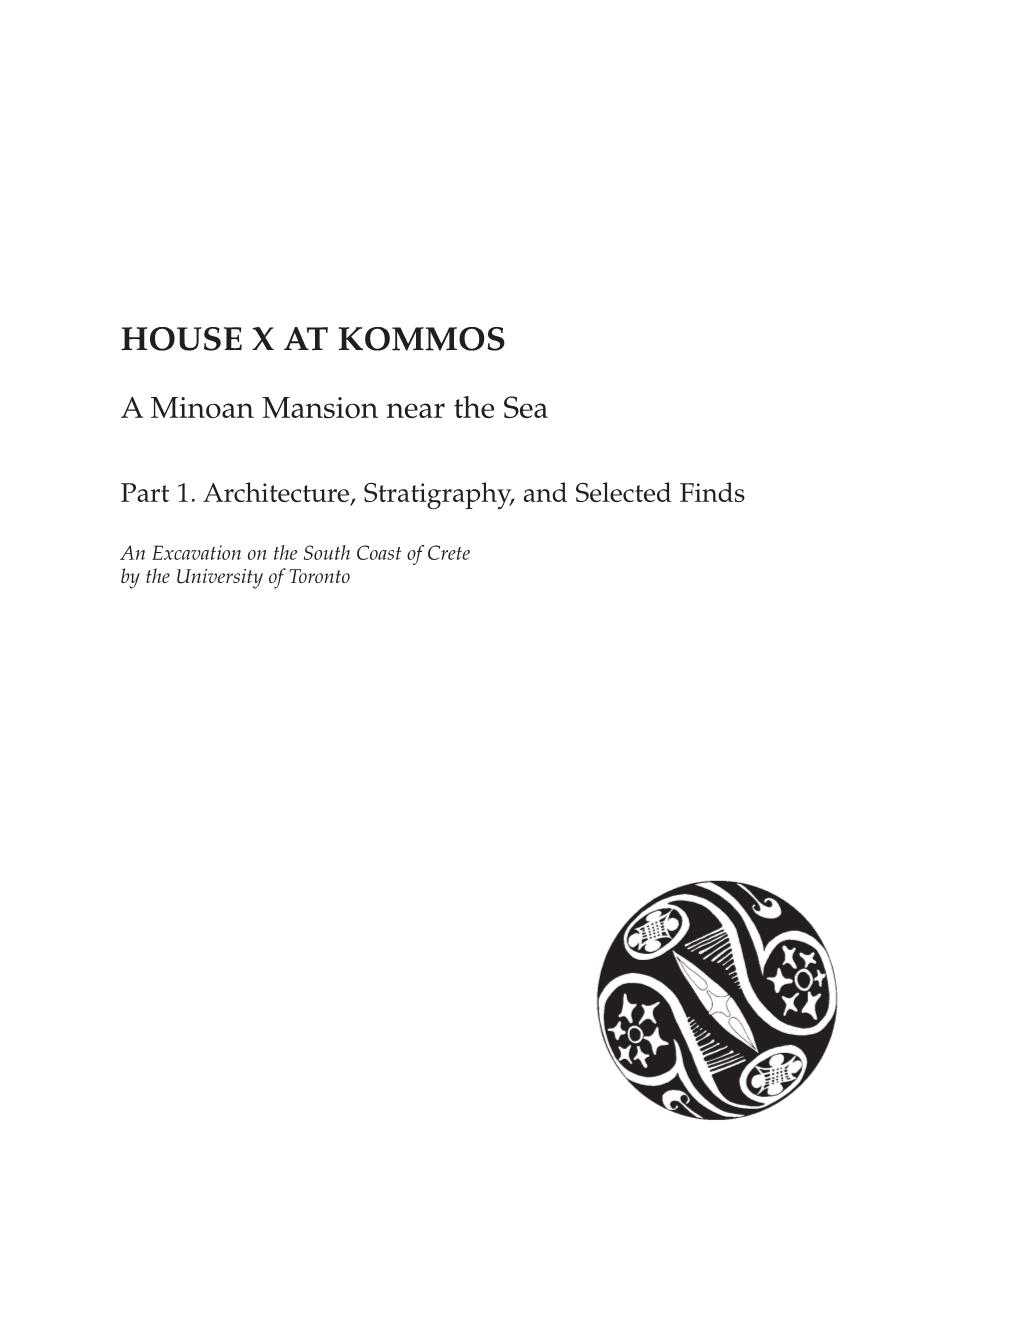 House X at Kommos